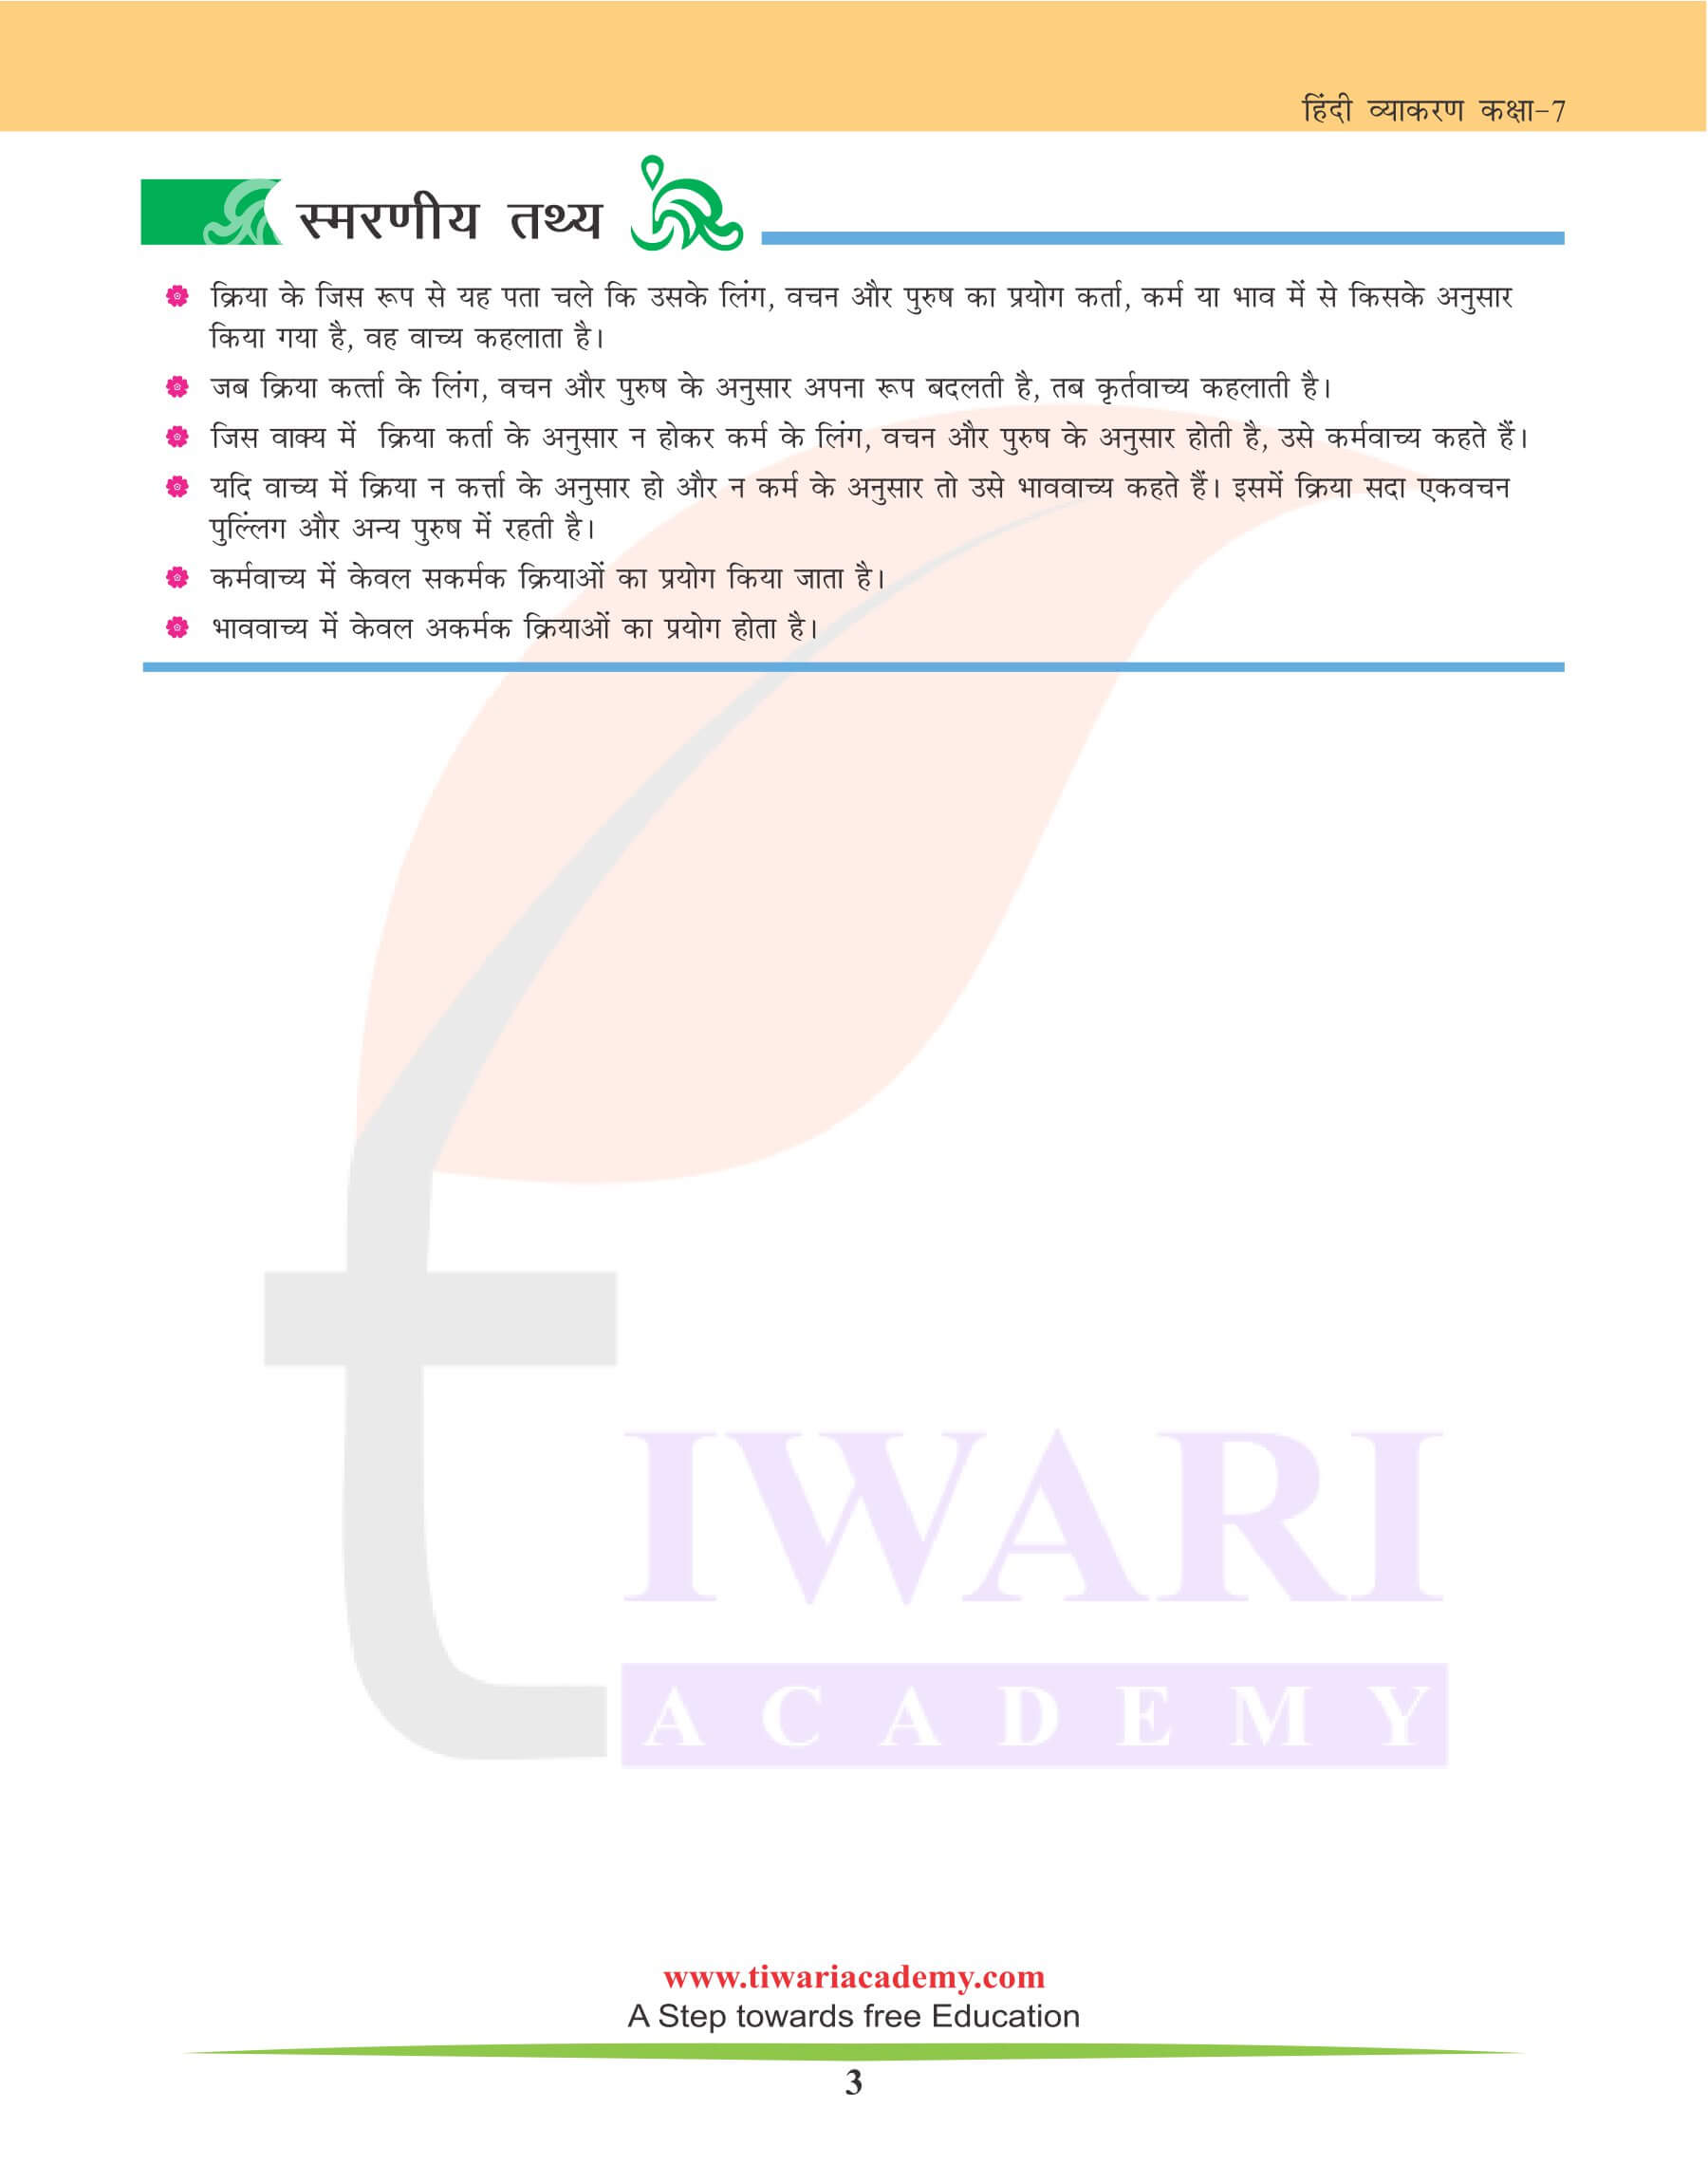 कक्षा 7 हिंदी व्याकरण अध्याय 16 वाच्य के भेद